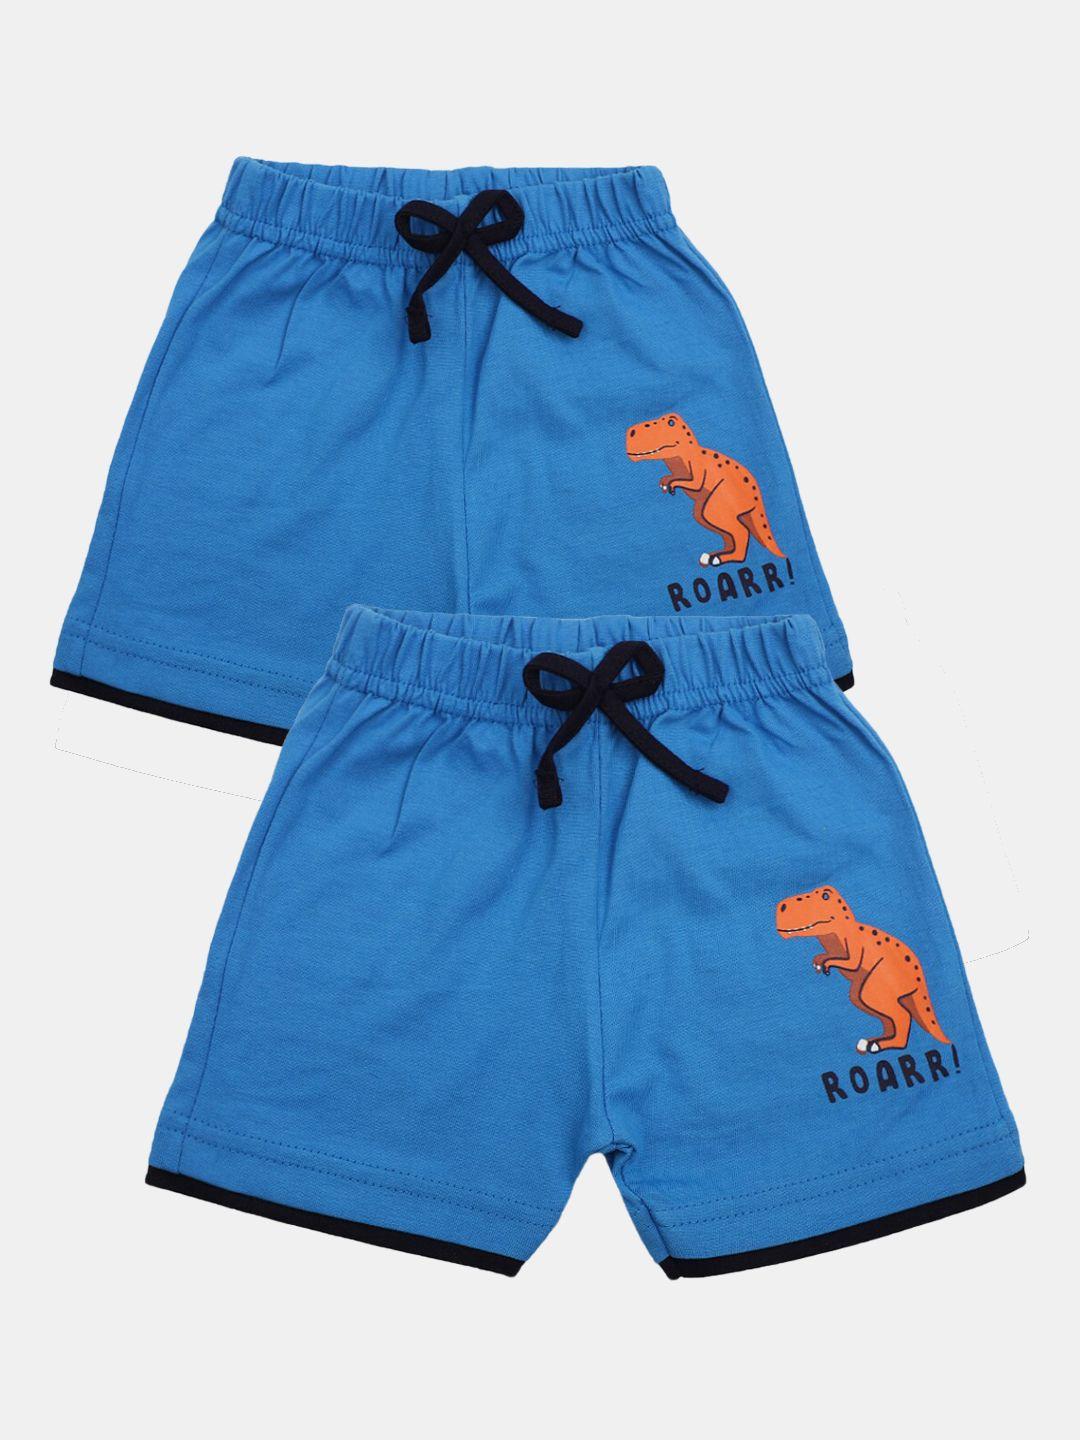 v-mart-infants-pack-of-2-cotton-shorts